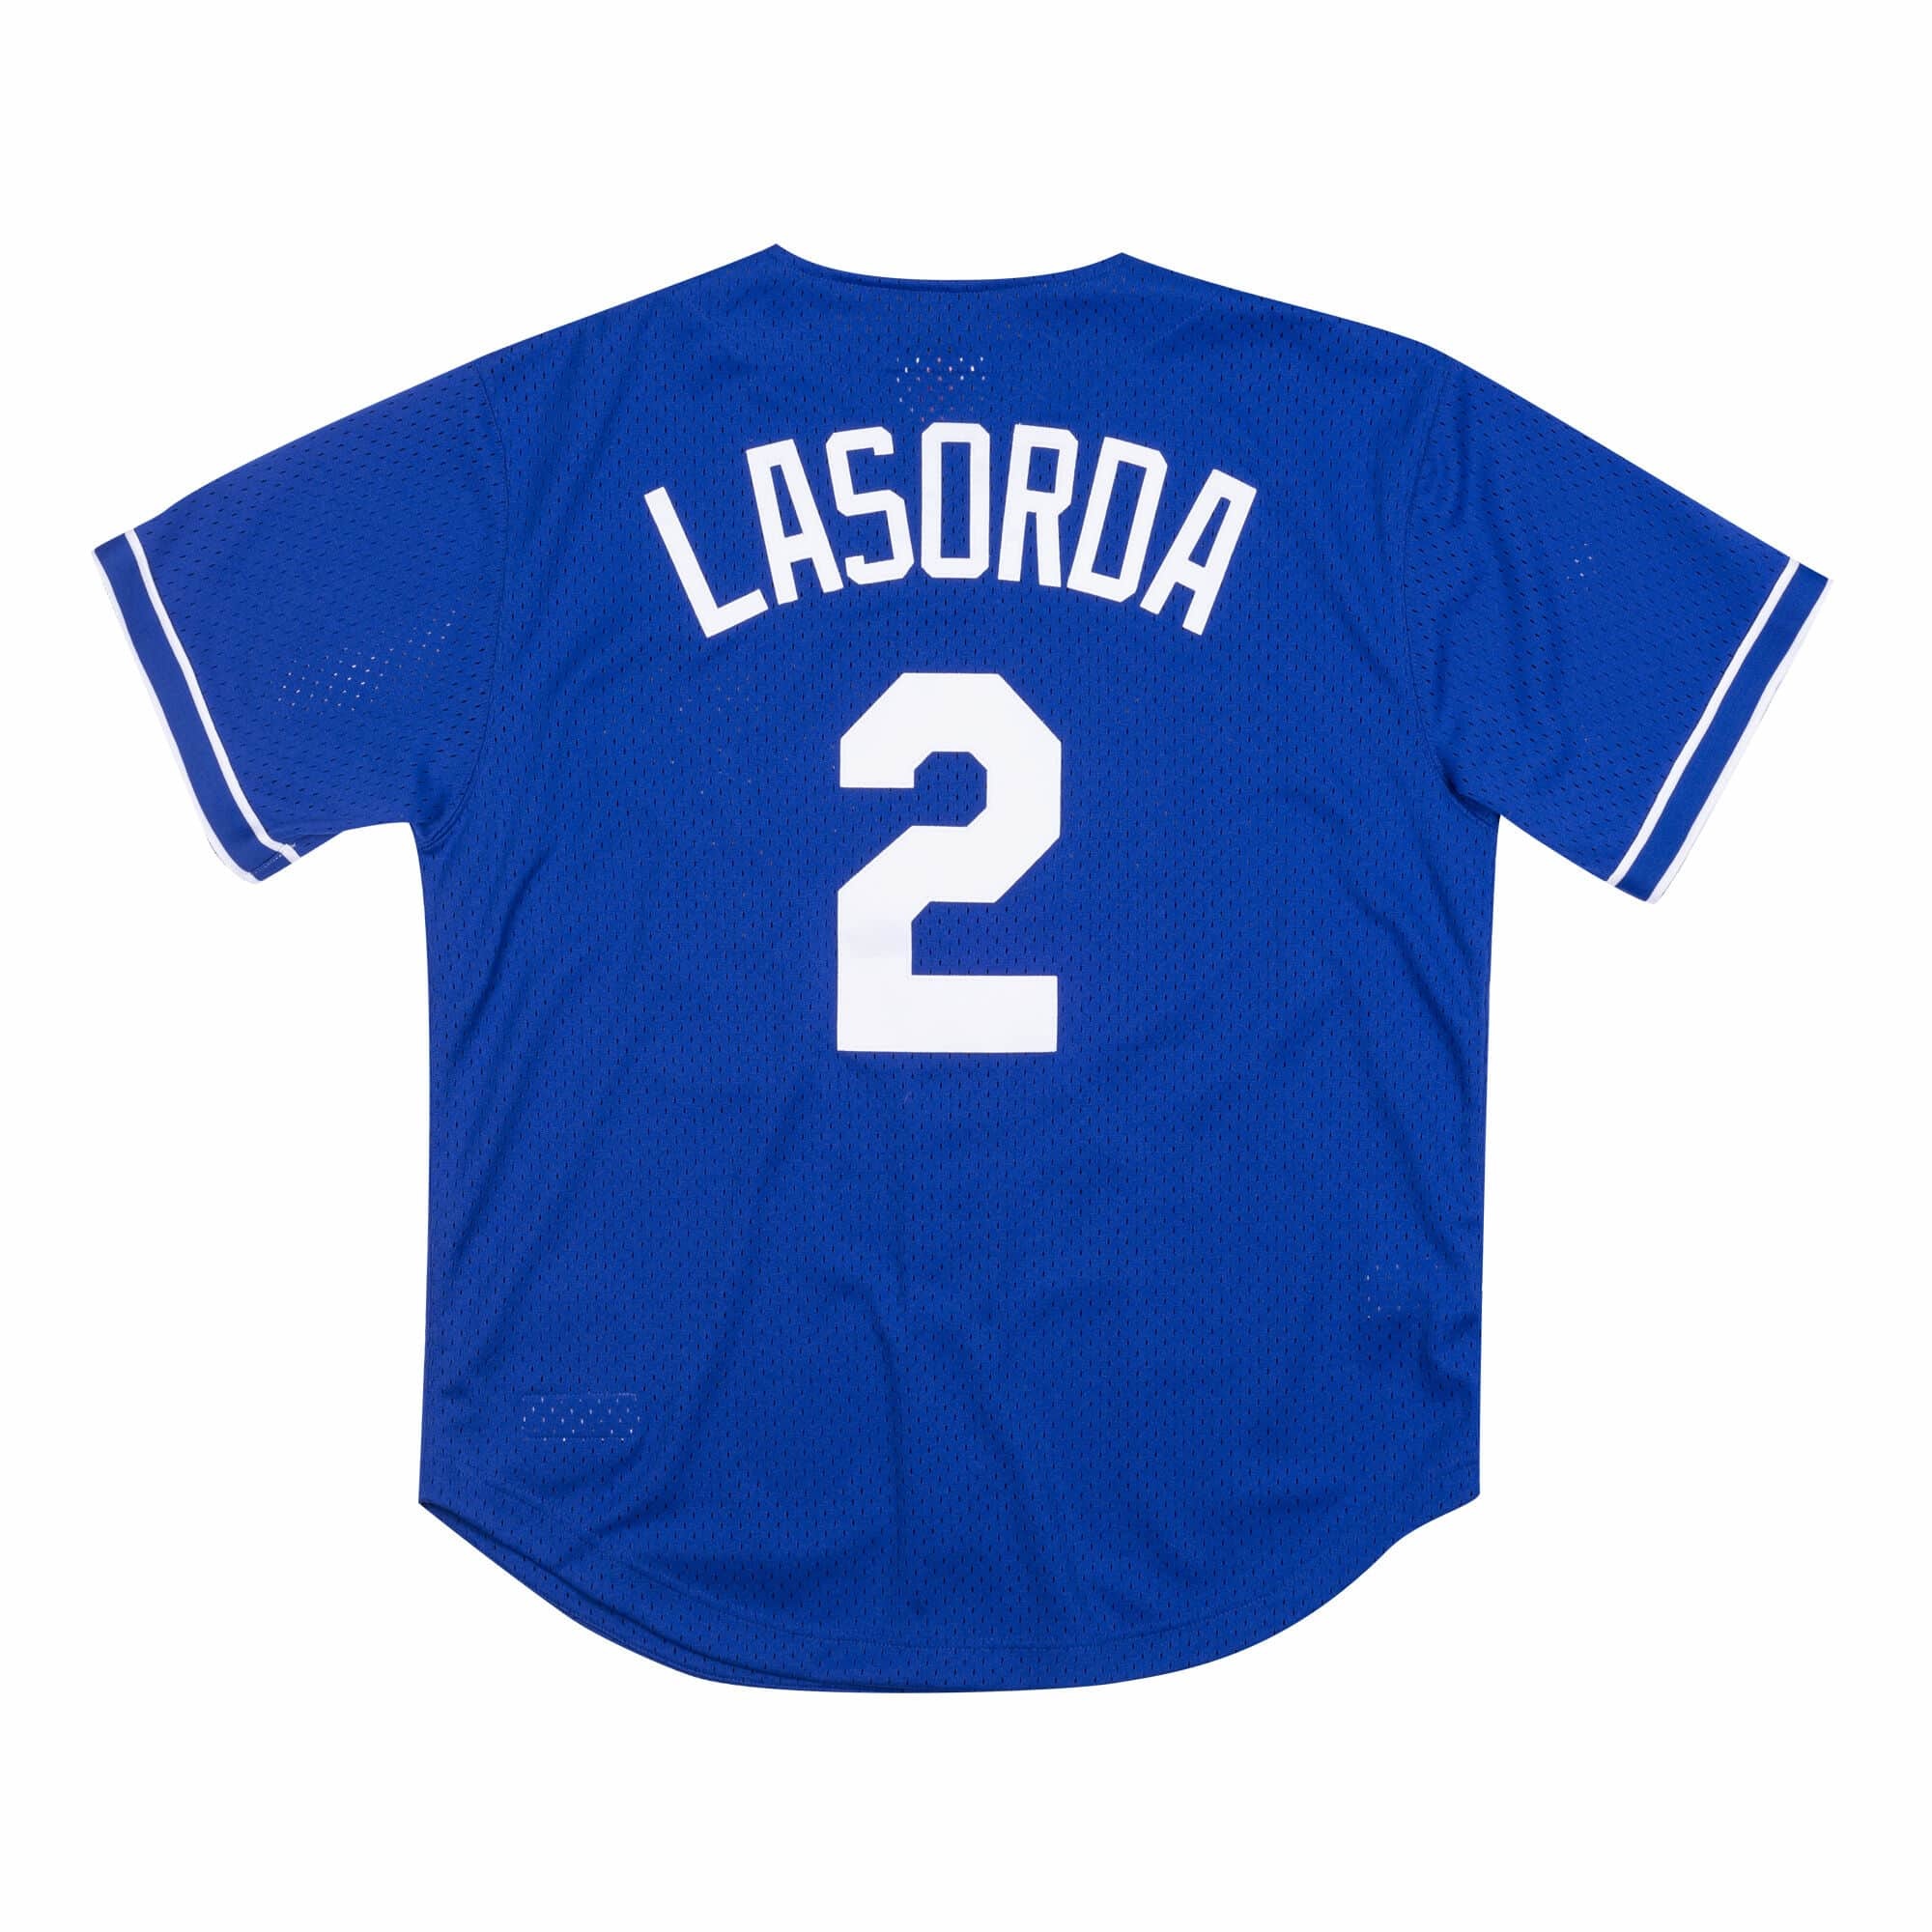 Los Angeles Dodgers Tommy Lasorda Royal Replica Men's Alternate Player  Jersey S,M,L,XL,XXL,XXXL,XXXXL